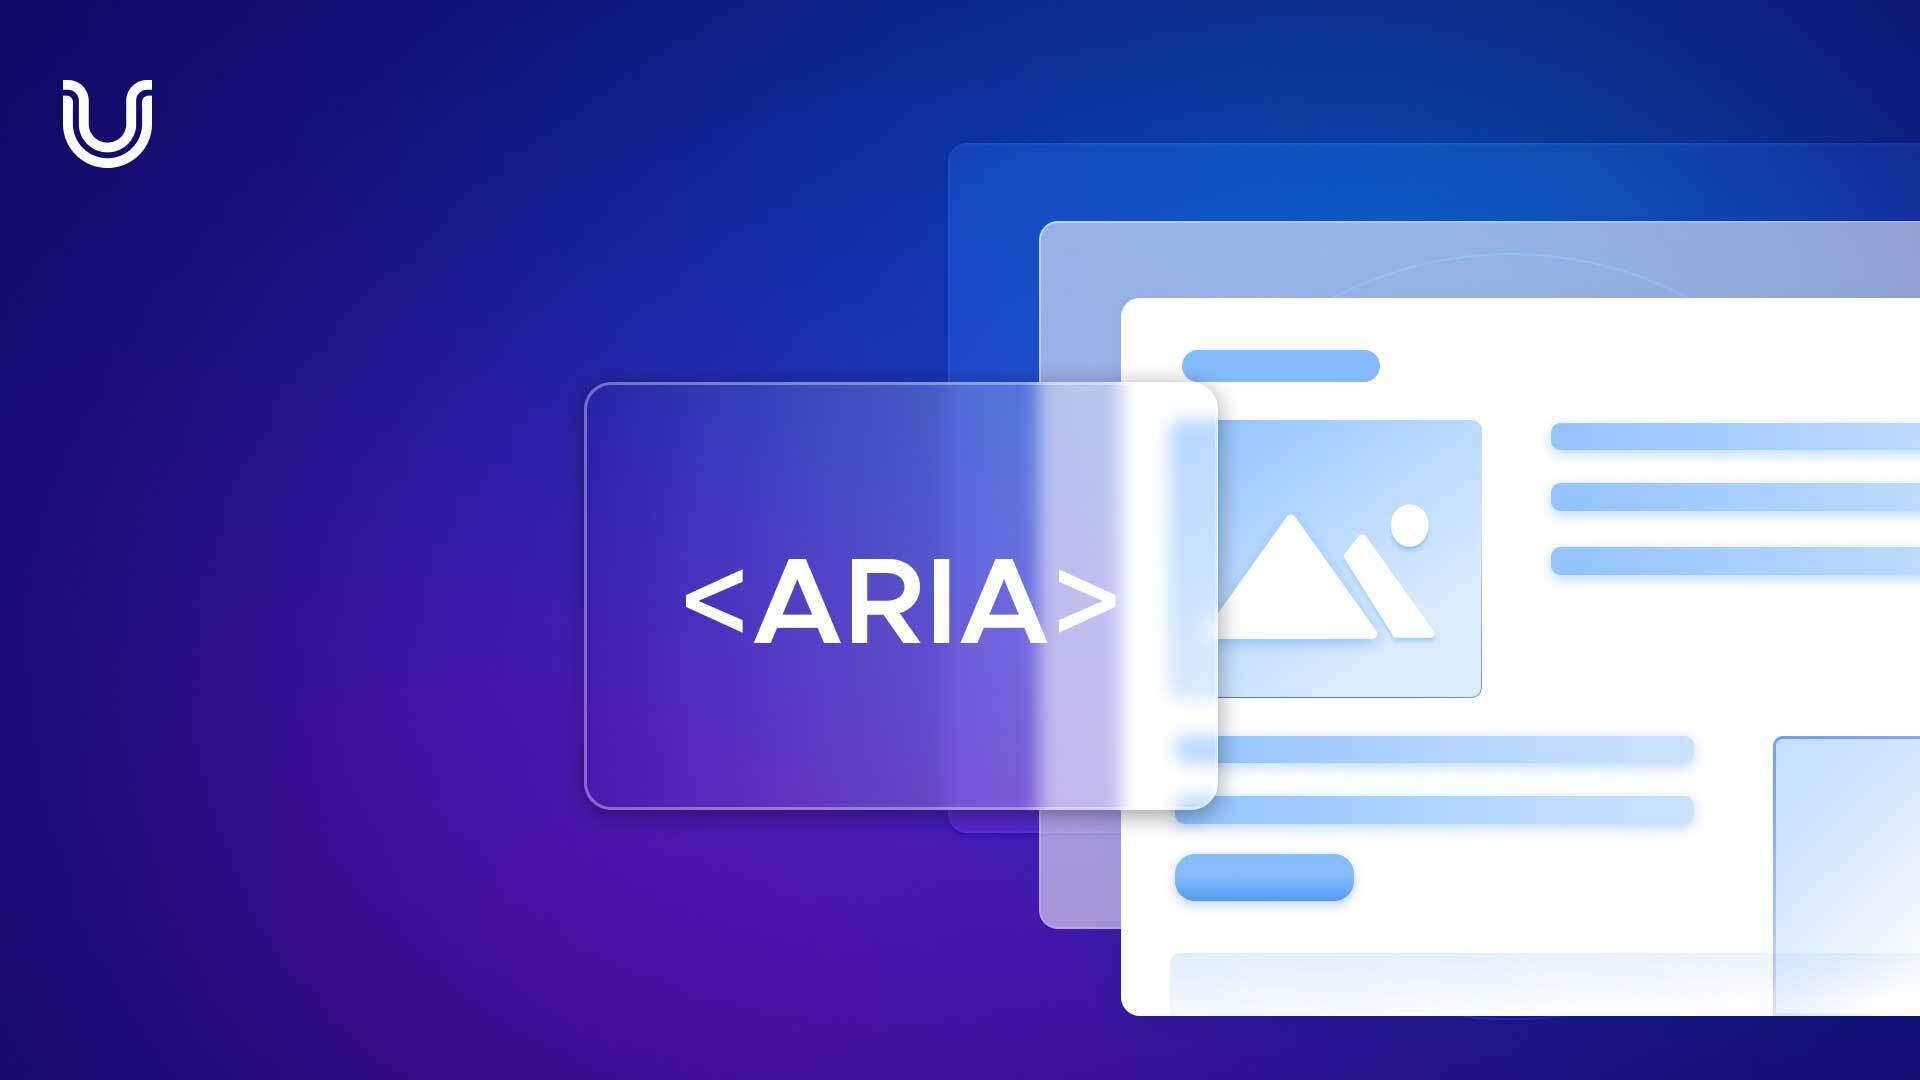 ARIA label per l’accessibilità web: a cosa servono e come utilizzarli